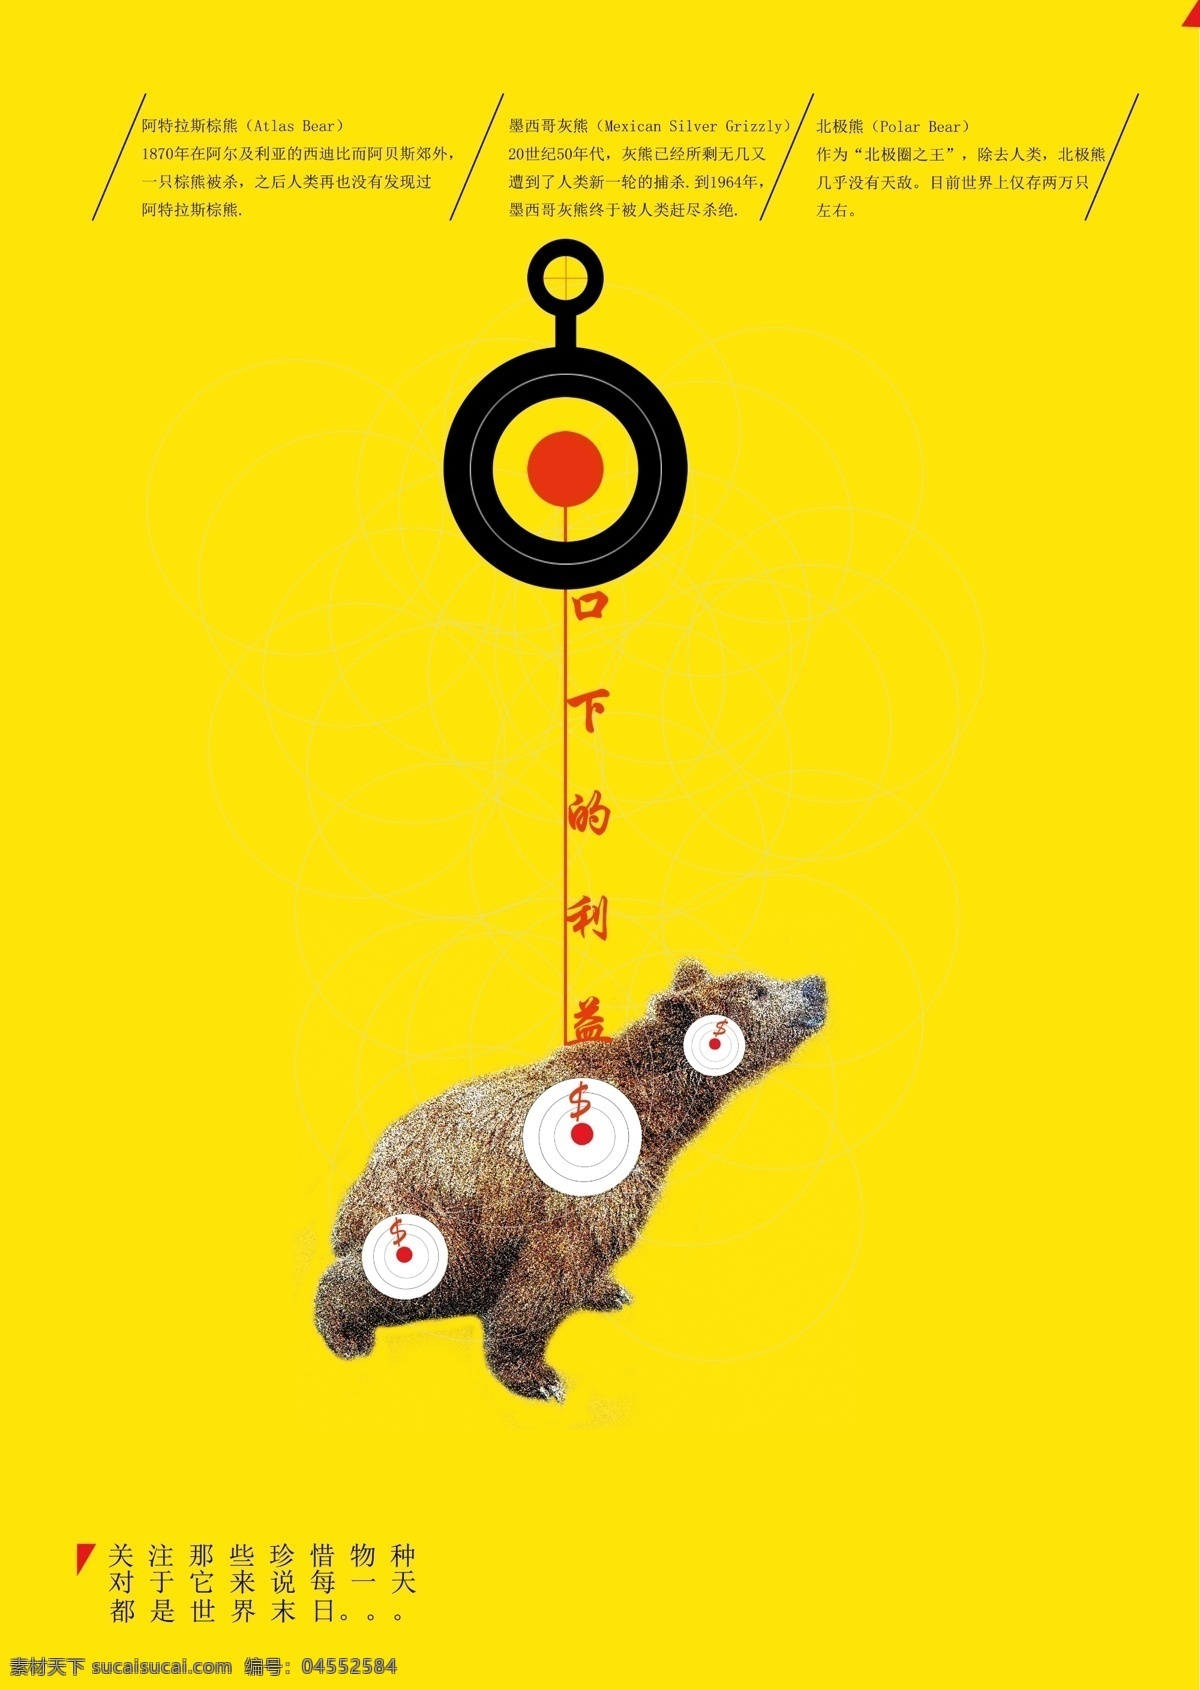 保护动物海报 毕业设计 创意 公益海报 广告设计模板 熊 野生动物 保护 动物 海报 模板下载 源文件 环保公益海报